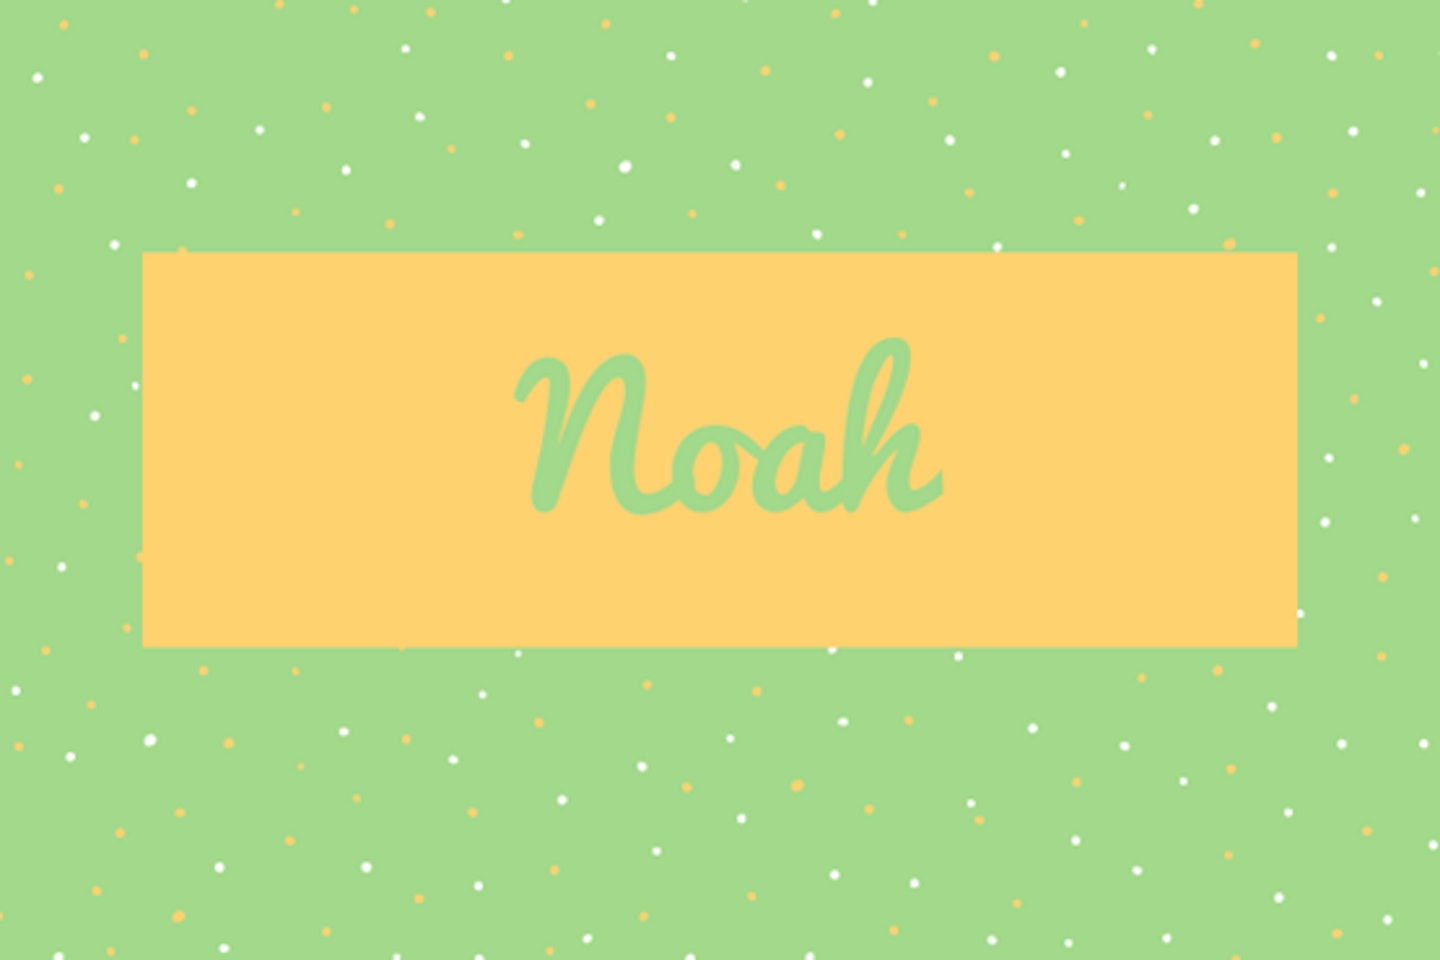 22) Noah